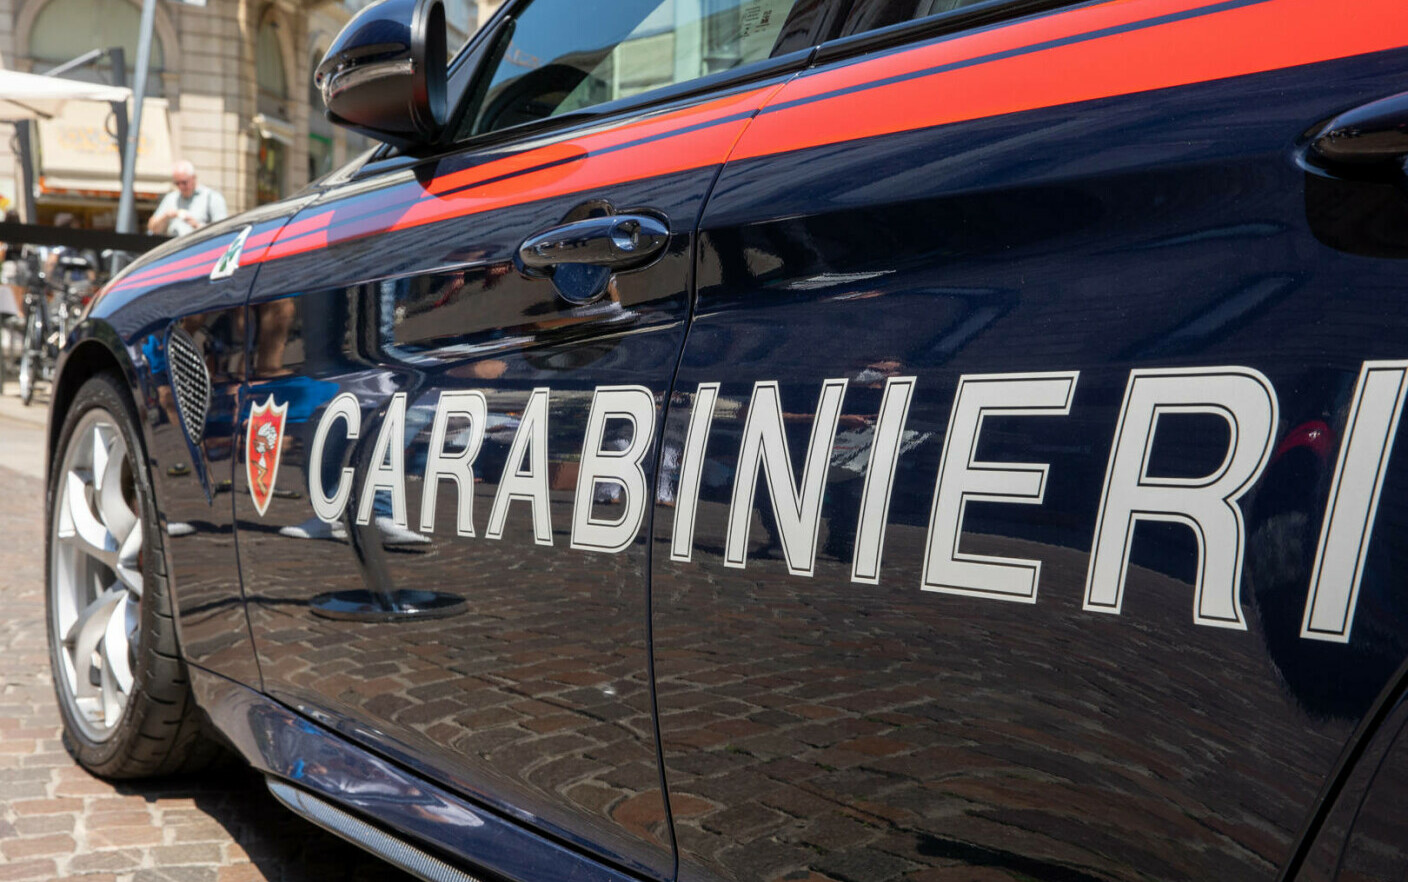 Un rumeno disperso in Italia, trovato morto dai carabinieri.  Lascia una famiglia in lutto